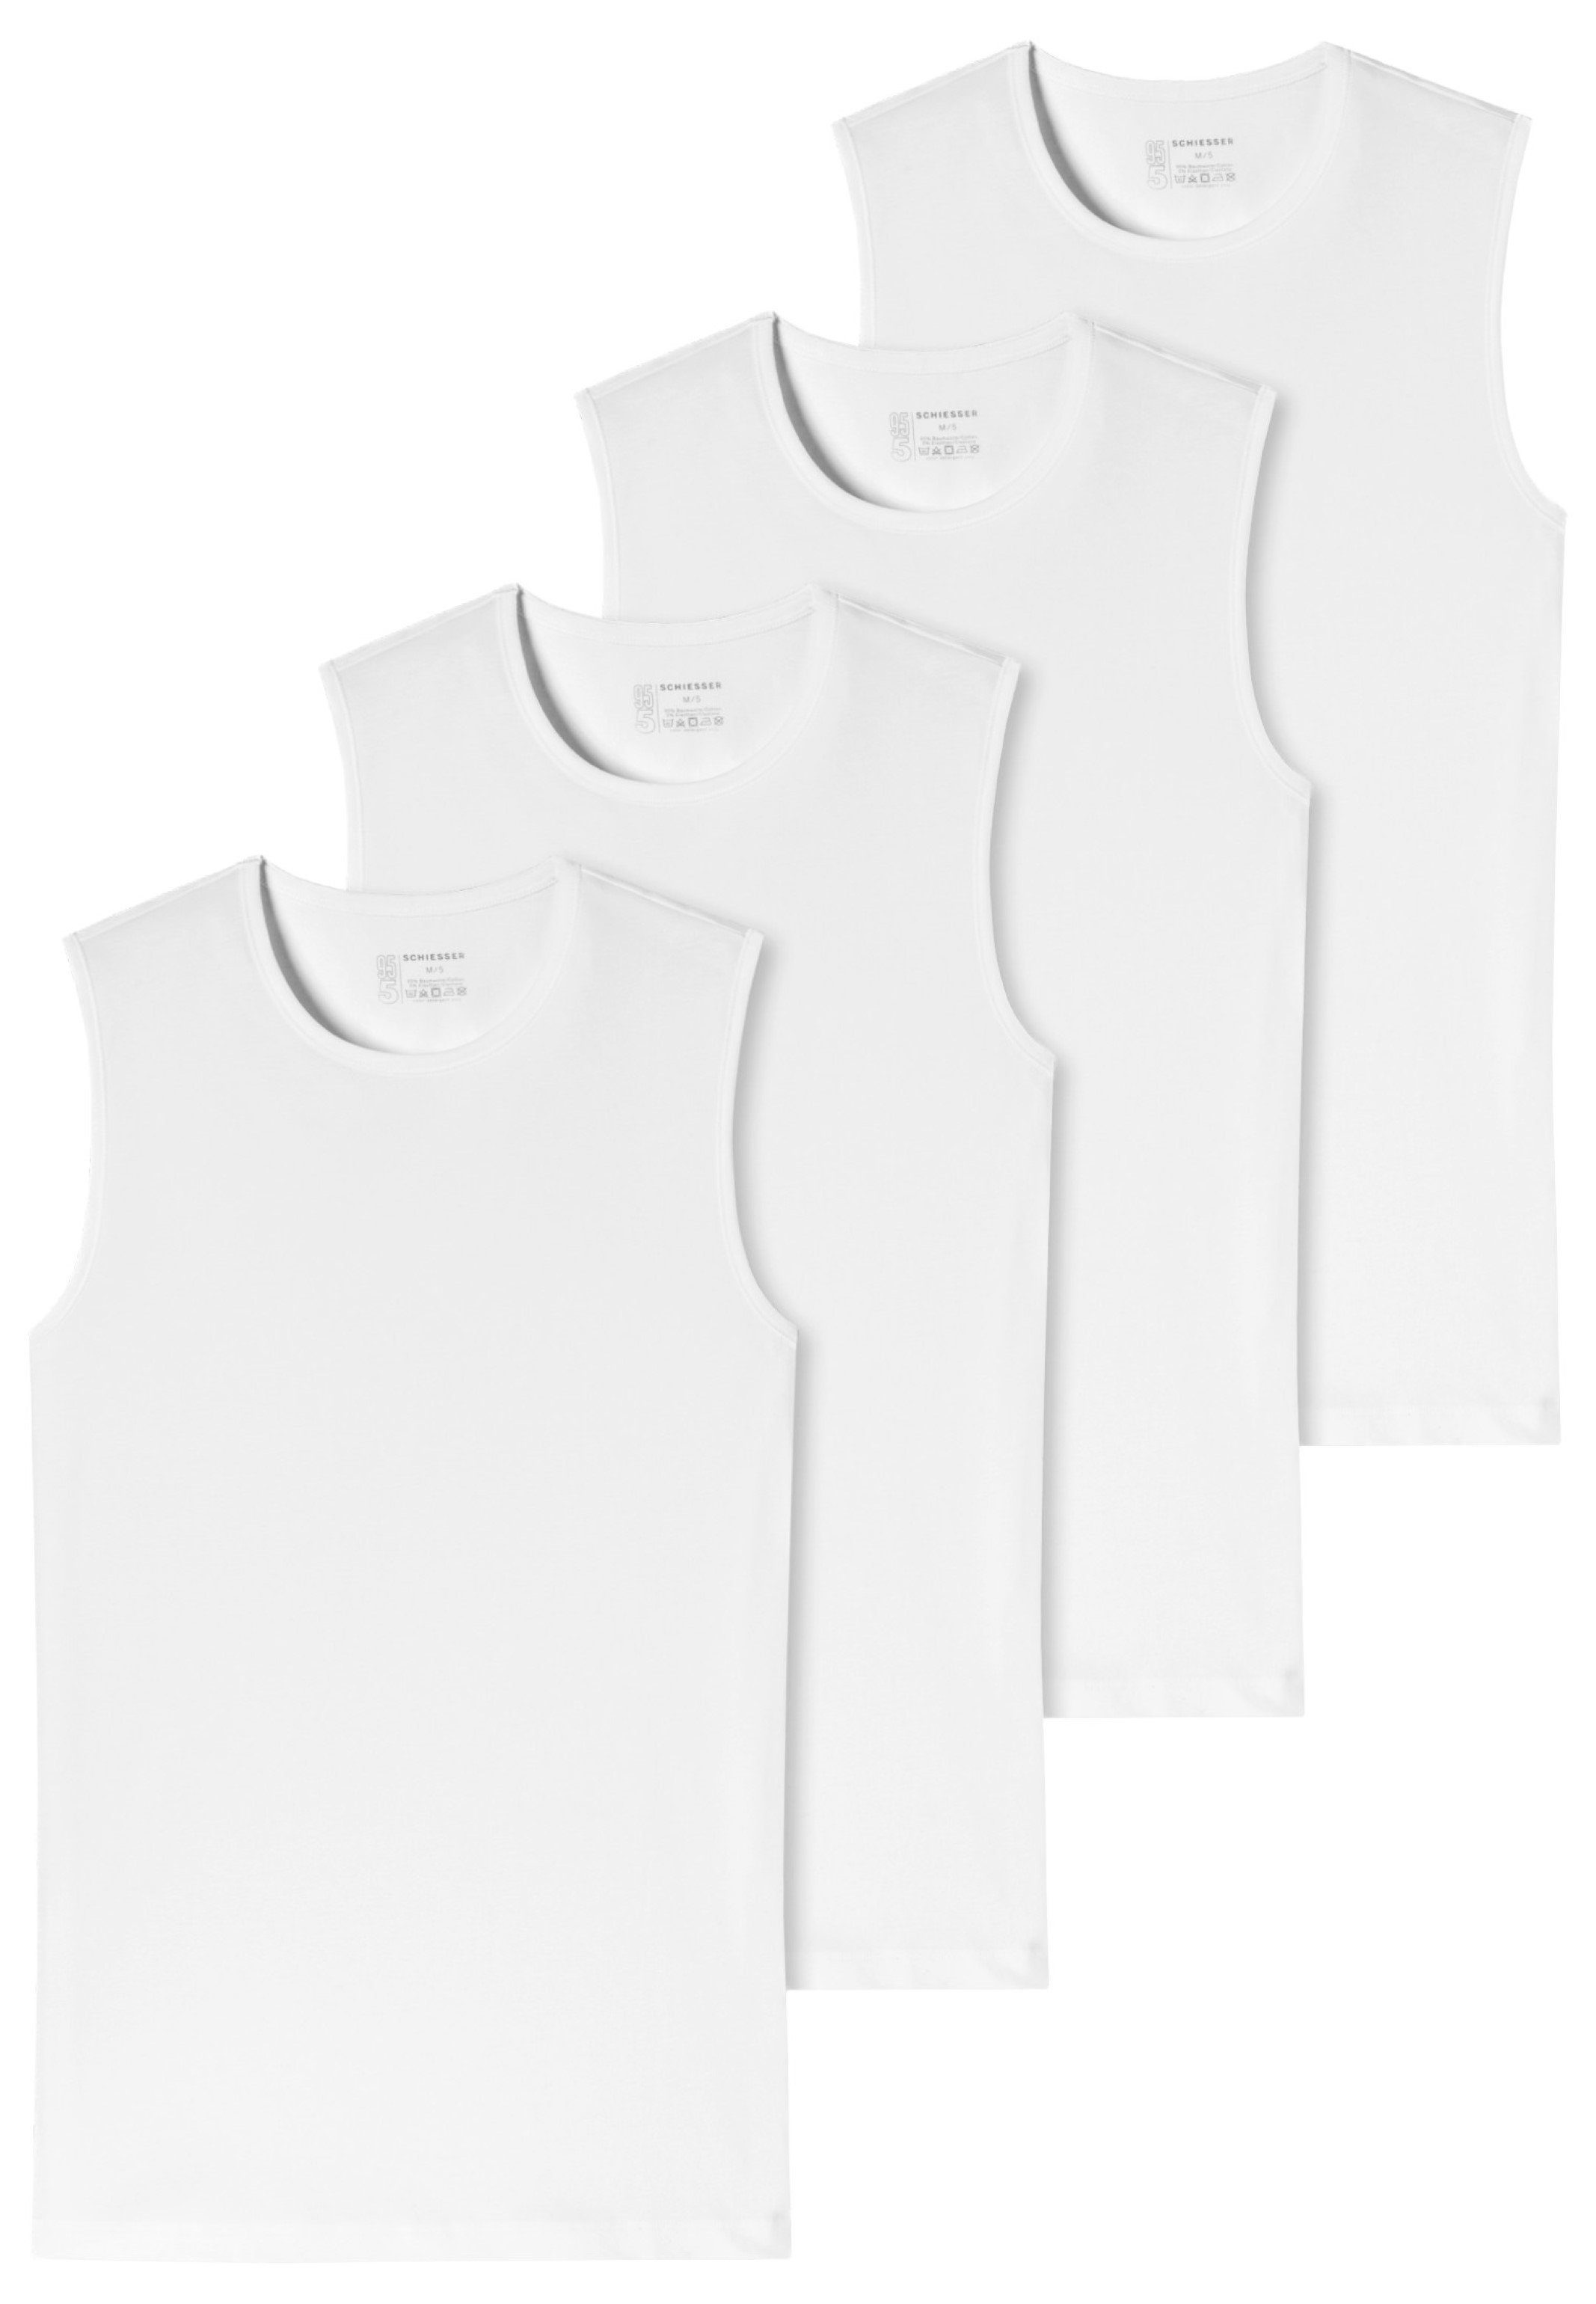 Schiesser Unterhemd 4er-Pack - 95/5 - Organic Cotton (Spar-Set, 4-St) Unterhemd / Tanktop - Baumwolle - Komfortabler Rundhalsausschnitt Weiß